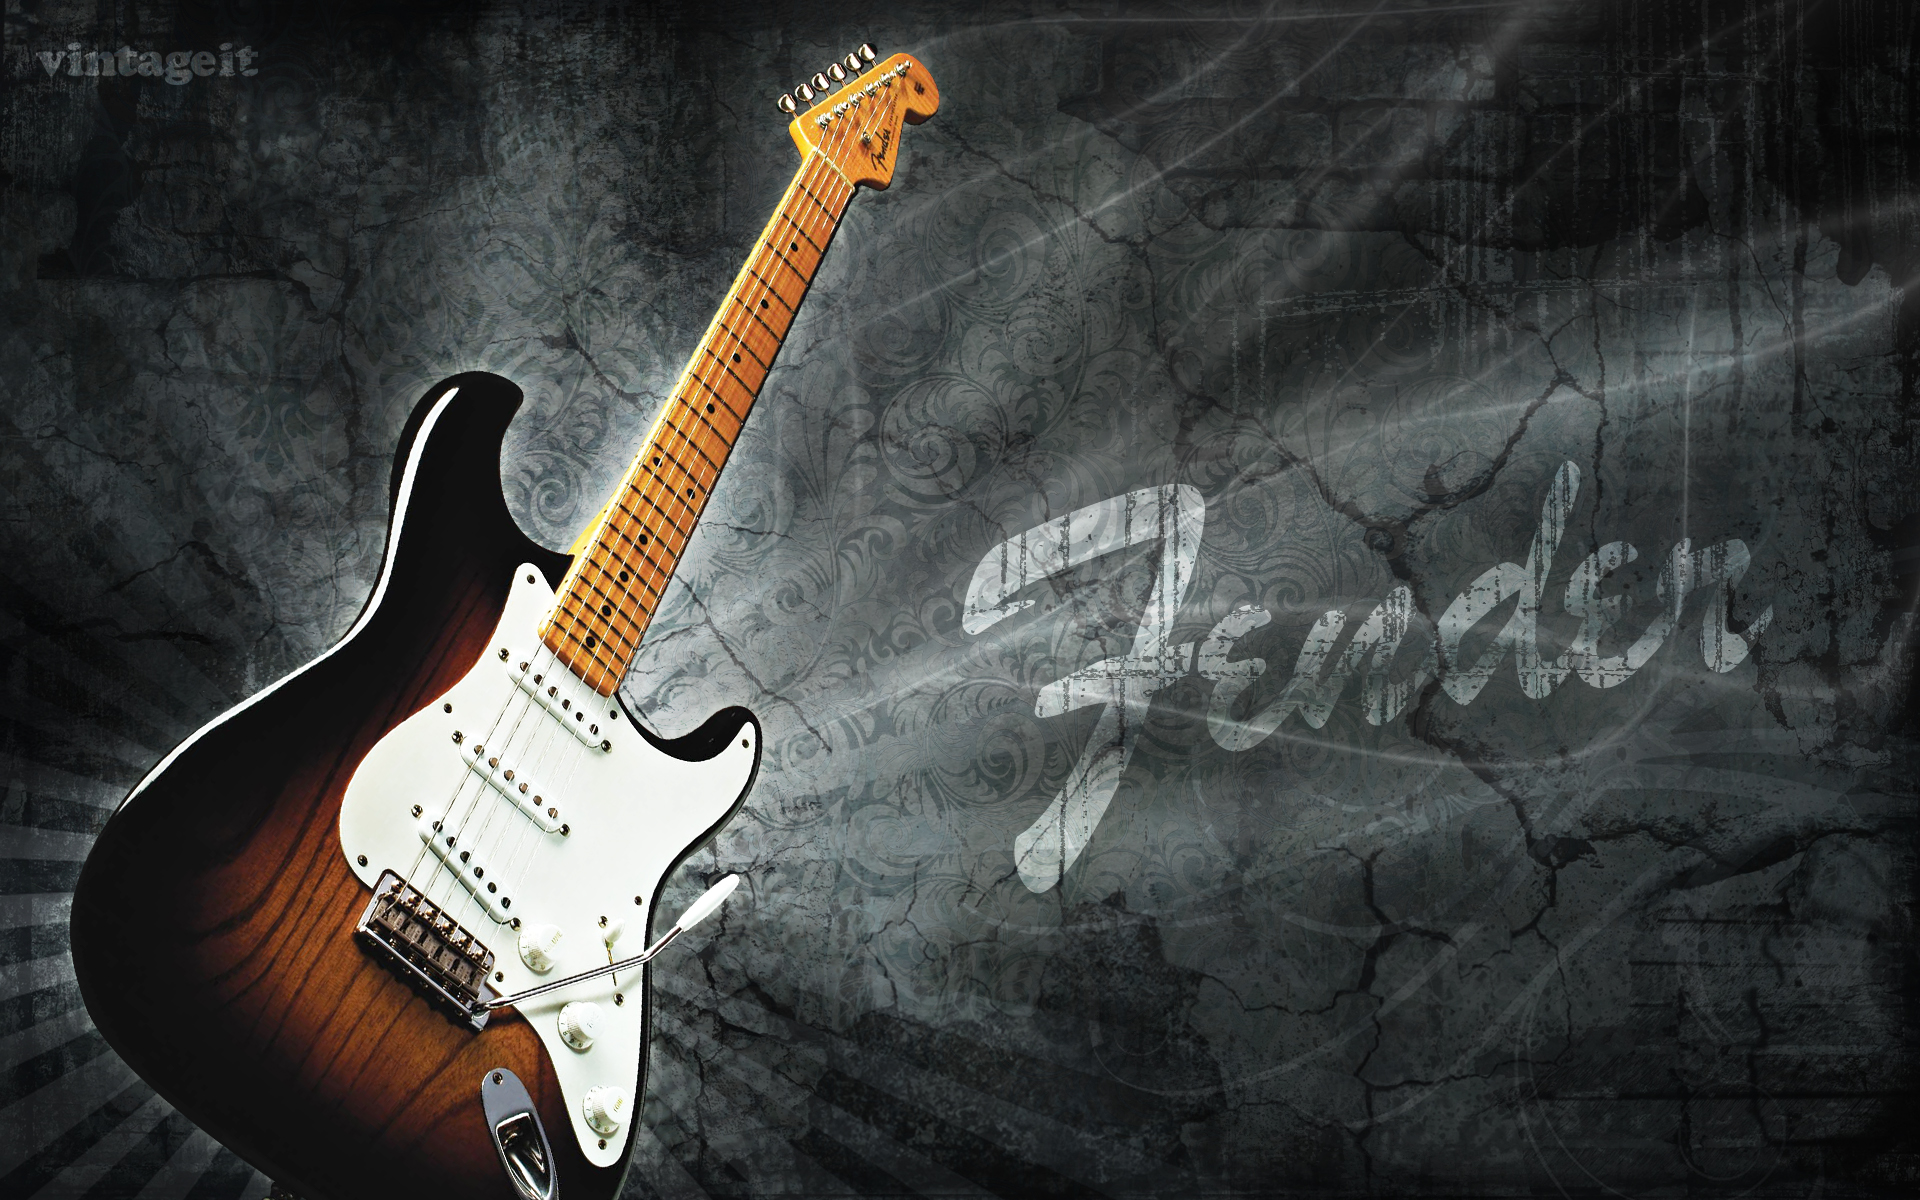 41 Fender Wallpaper High Resolution On Wallpapersafari